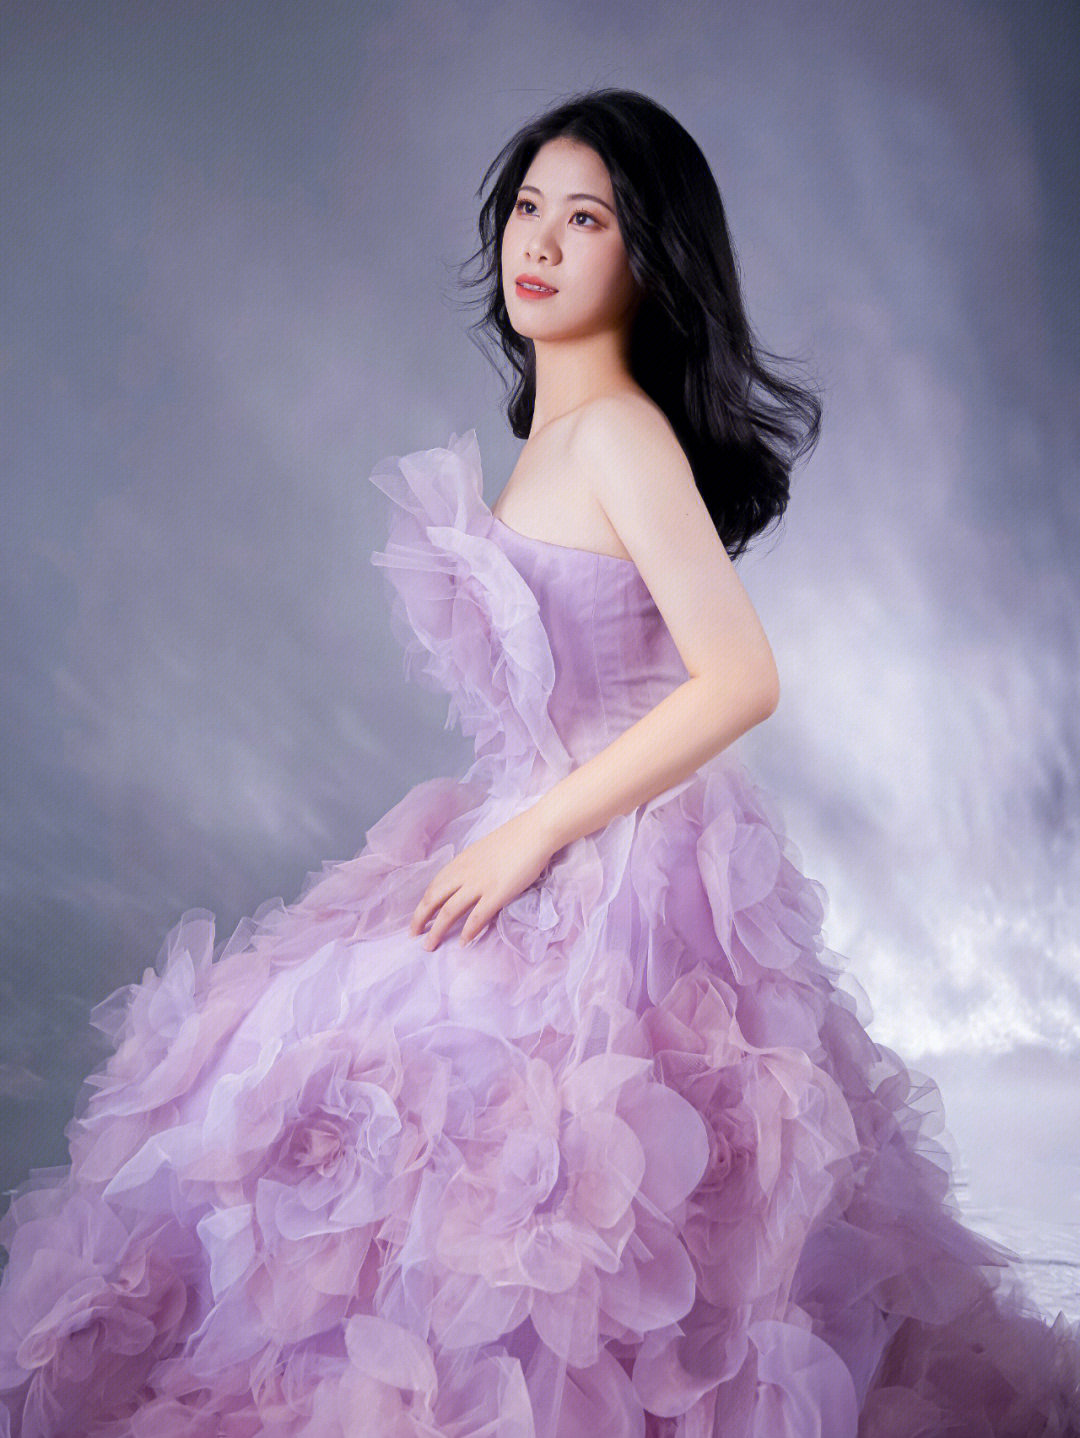 紫色系的礼服裙妥妥的仙女本人吧,给人的感觉温柔又浪漫95